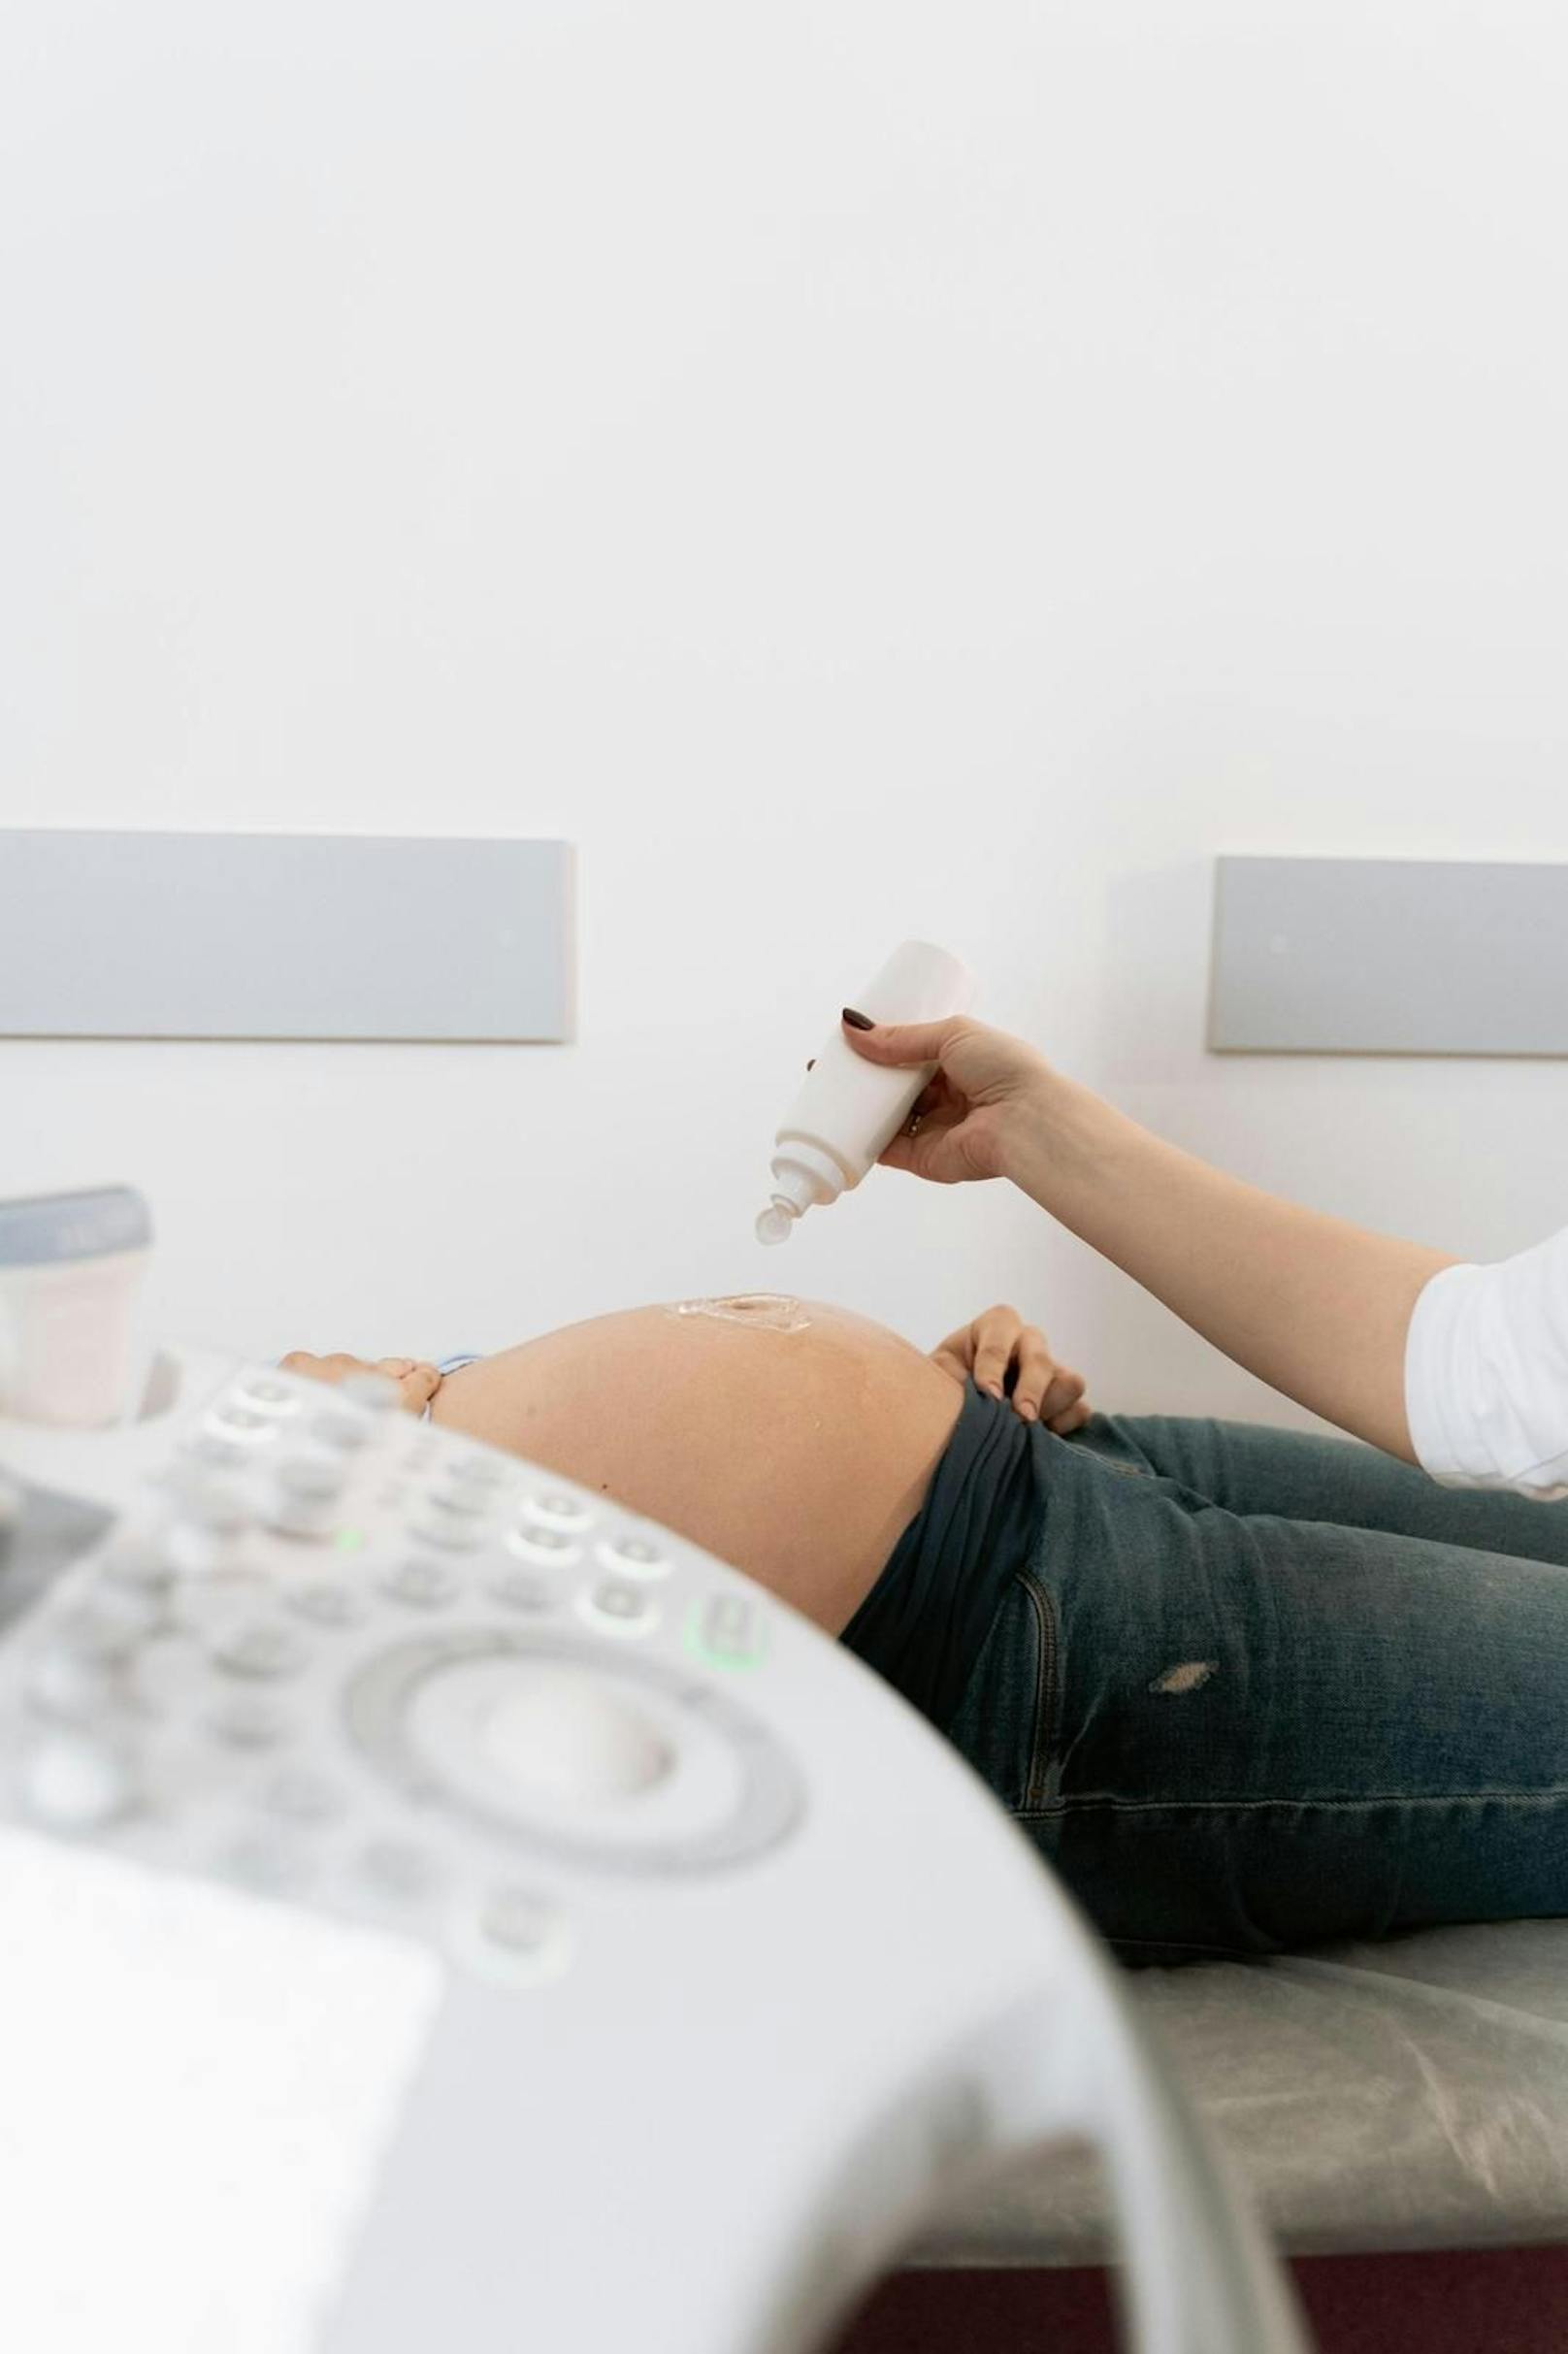 Für die 20-Jährige aus Nordrhein-Westfalen, die mittlerweile in der 18. Woche ist, war die Nachricht von der Schwangerschaft ein Schock. Dennoch hat sie sich dafür entschieden, das Baby zu behalten.